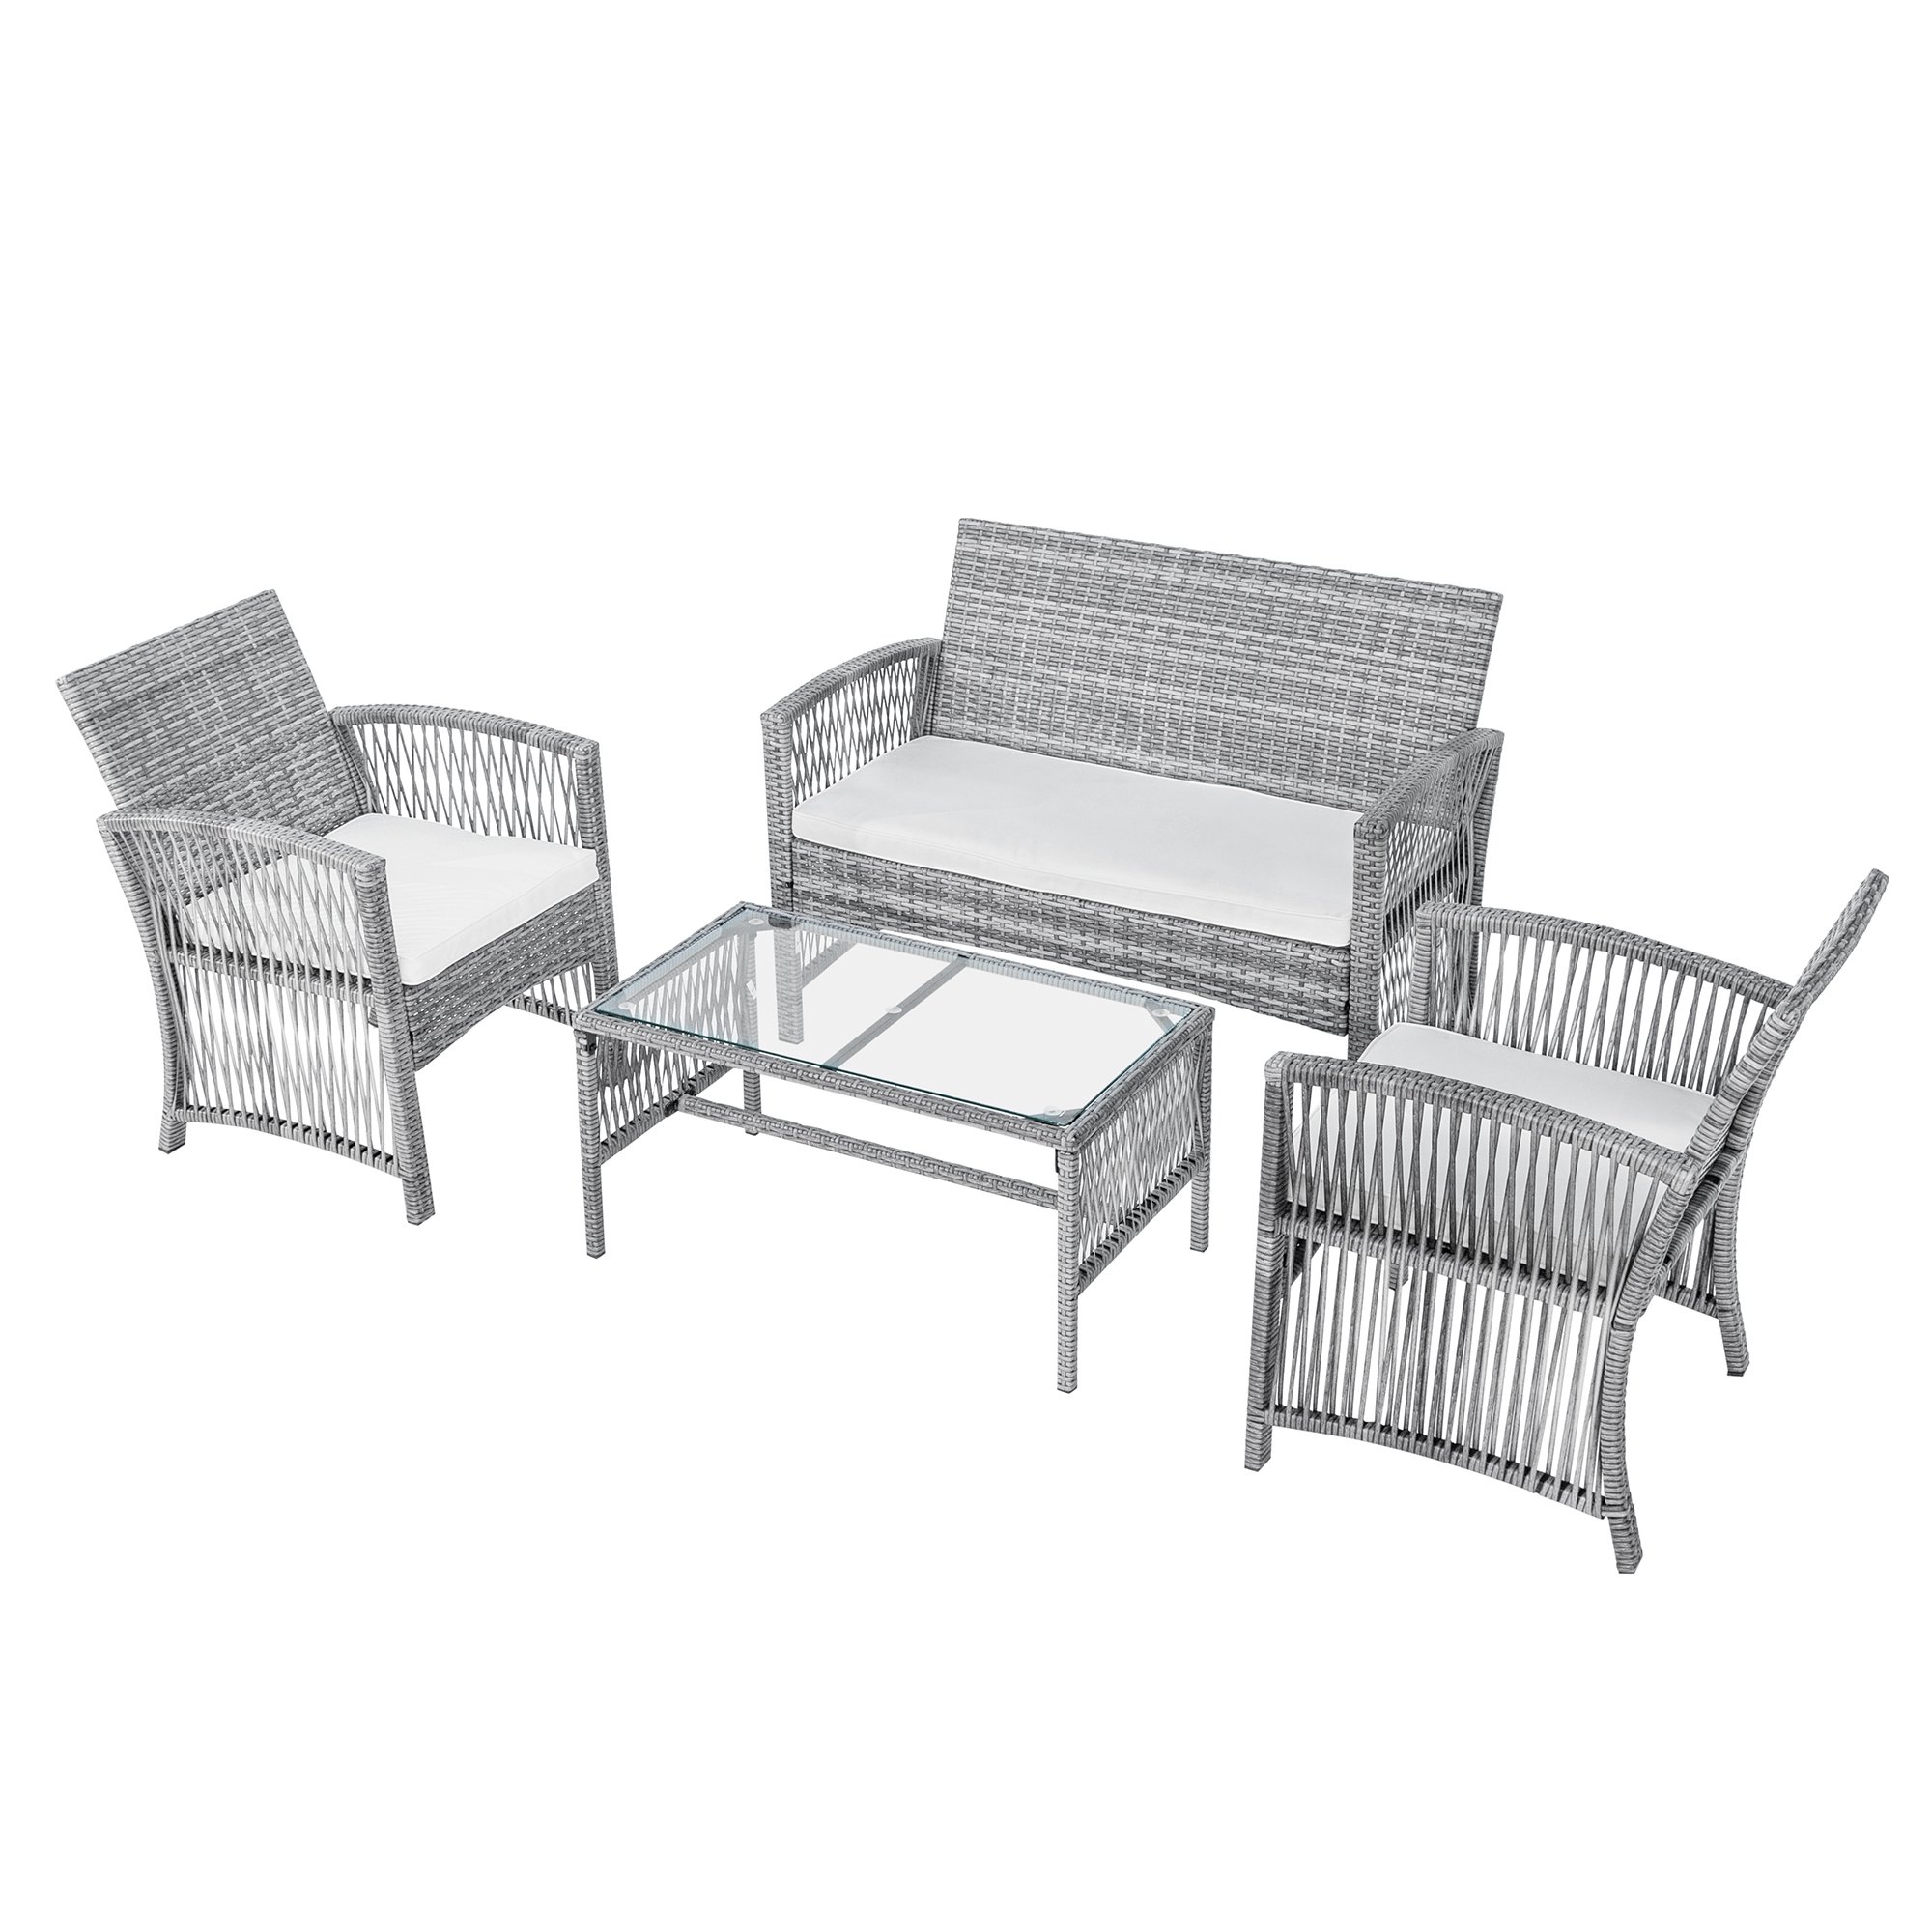 4 Pieces Outdoor Furniture Rattan Chair & Table Patio Set Outdoor Sofa for Garden, Backyard, Porch and Poolside, Gray-CASAINC